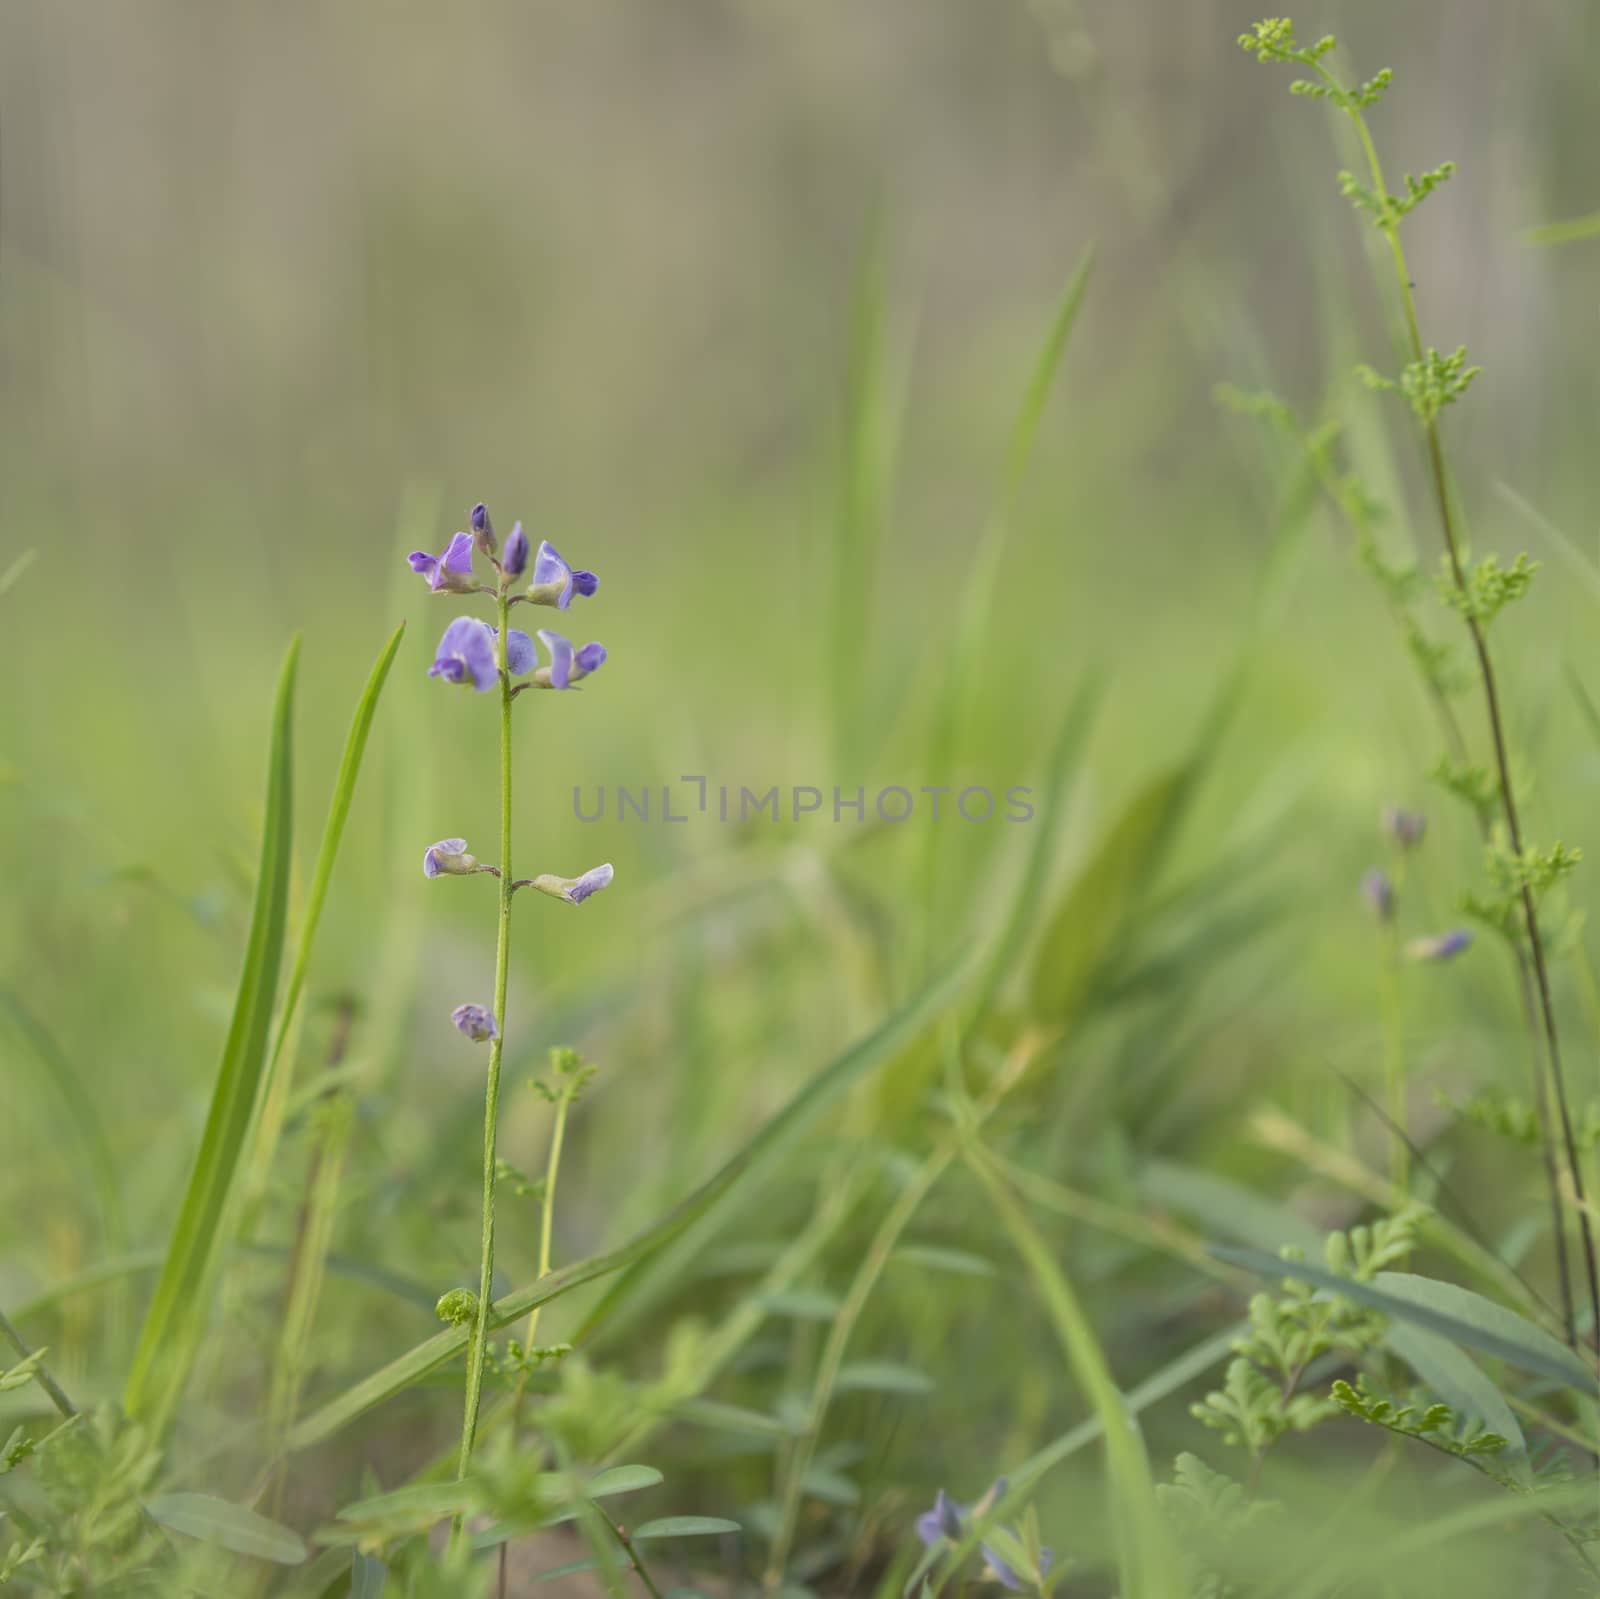 Australian Purple Wildflower Glycine Tabacina by sherj